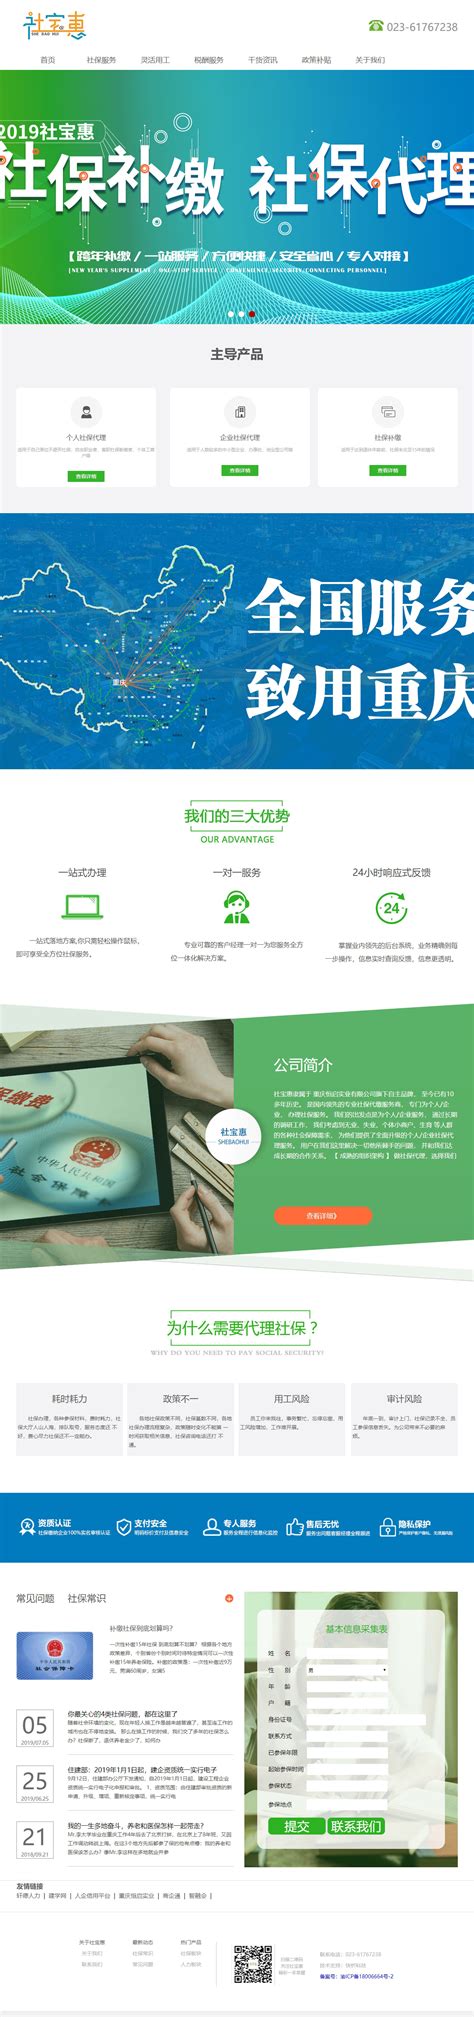 重庆网站制作合作方式